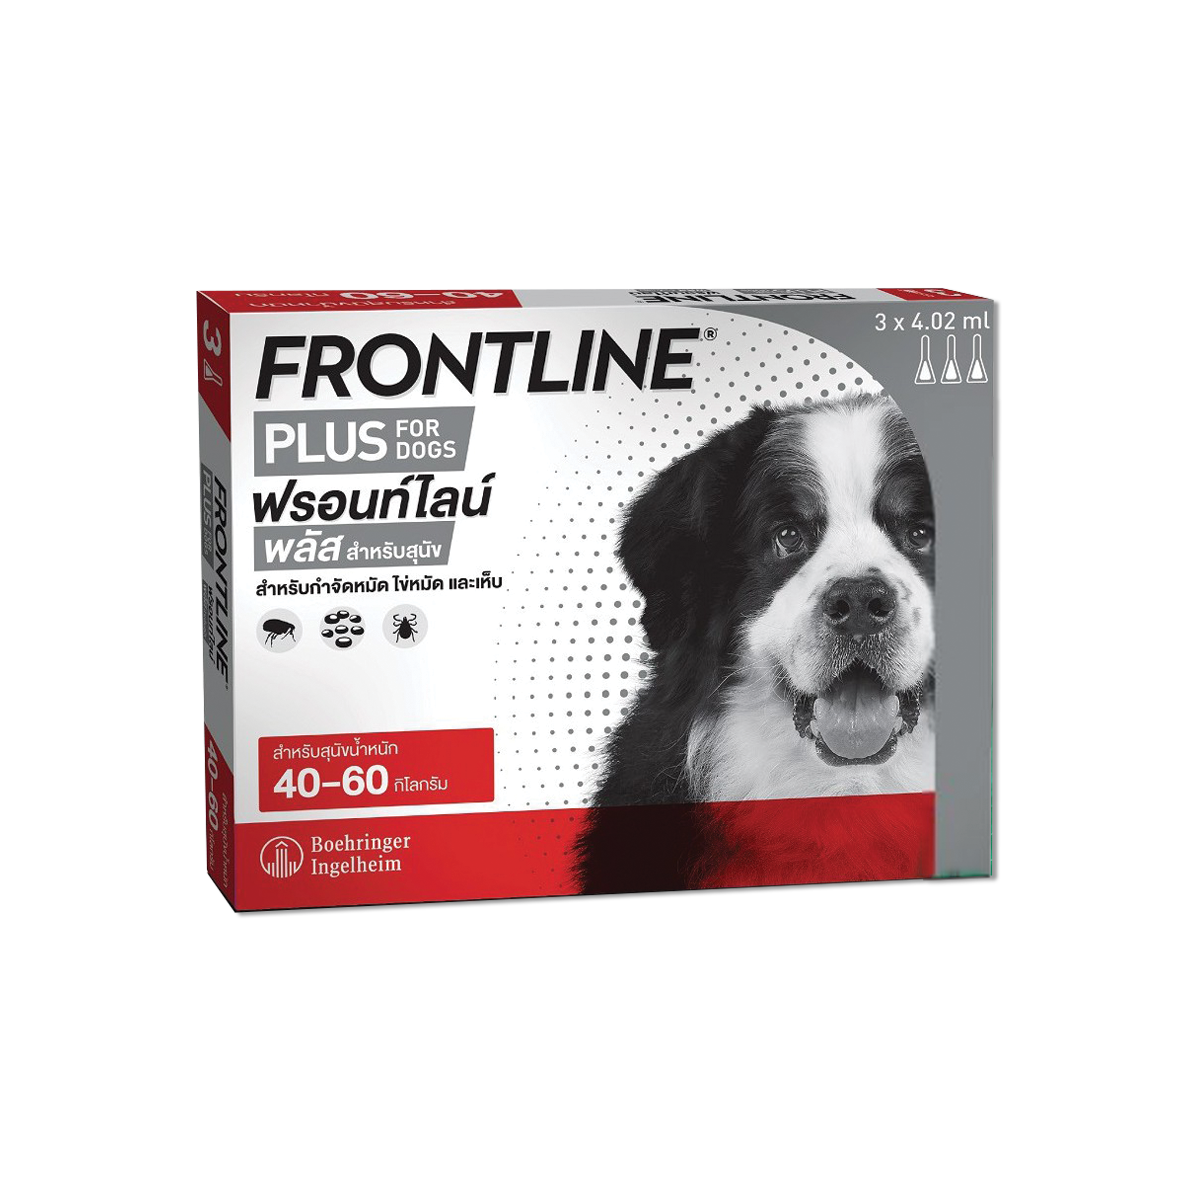 Frontline Plus Dog Size XL ฟรอนท์ไลน์ พลัส ยาหยดกำจัดเห็บหมัดสำหรับสุนัข (น้ำหนัก 40-60 กก.)